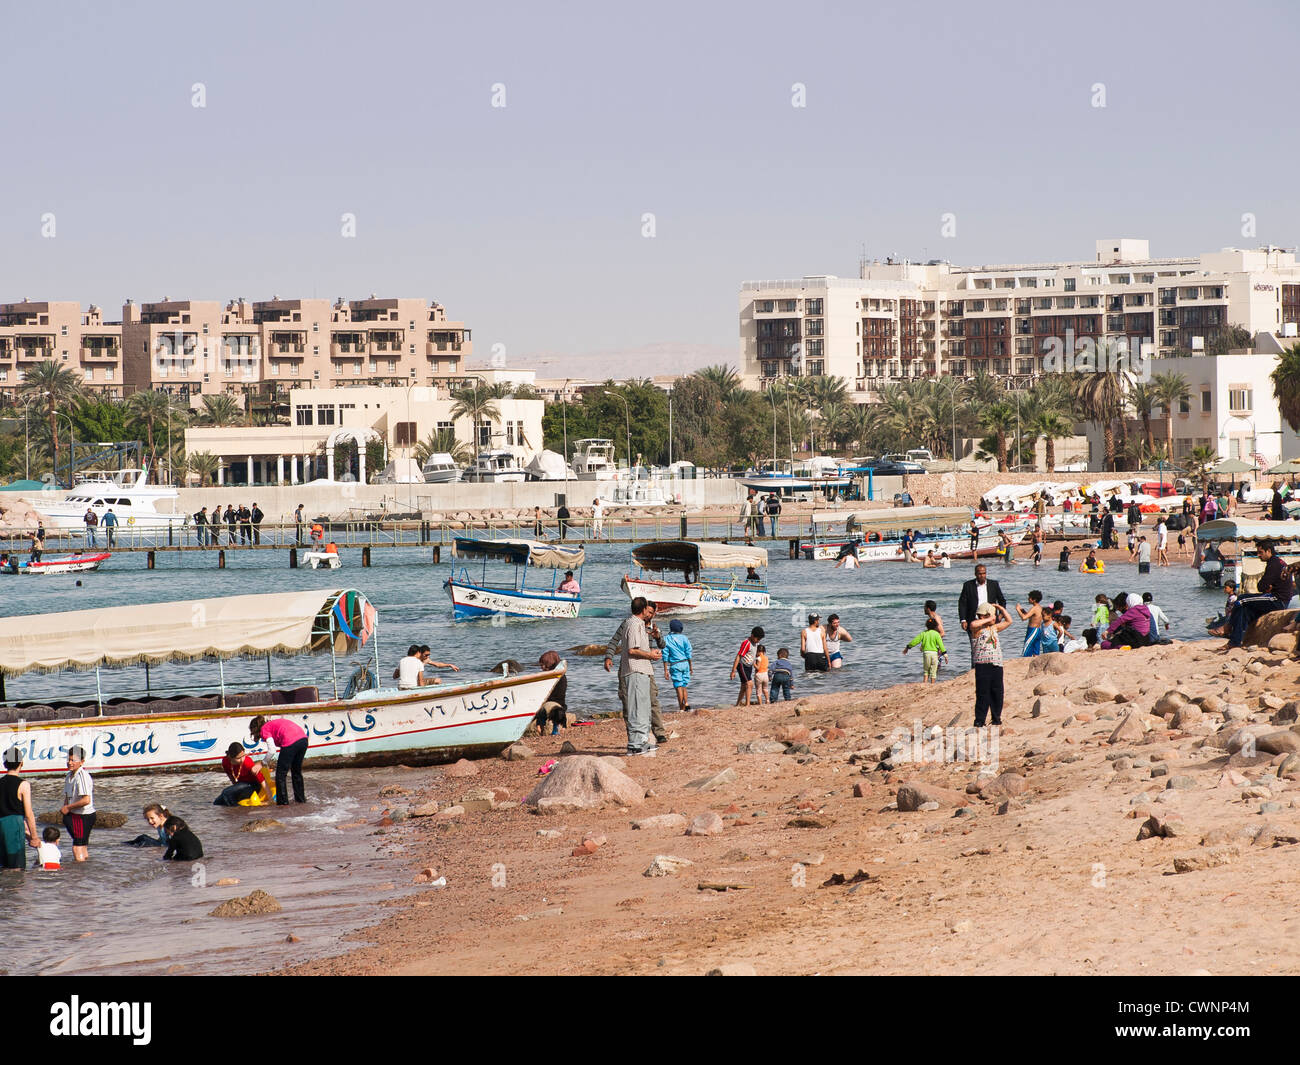 La playa pública en Aqaba, Jordania con los lugareños disfrutando el sol y  el agua. Se pueden alquilar barcos de cristal. El Mövenpick Hotel en  segundo plano Fotografía de stock - Alamy